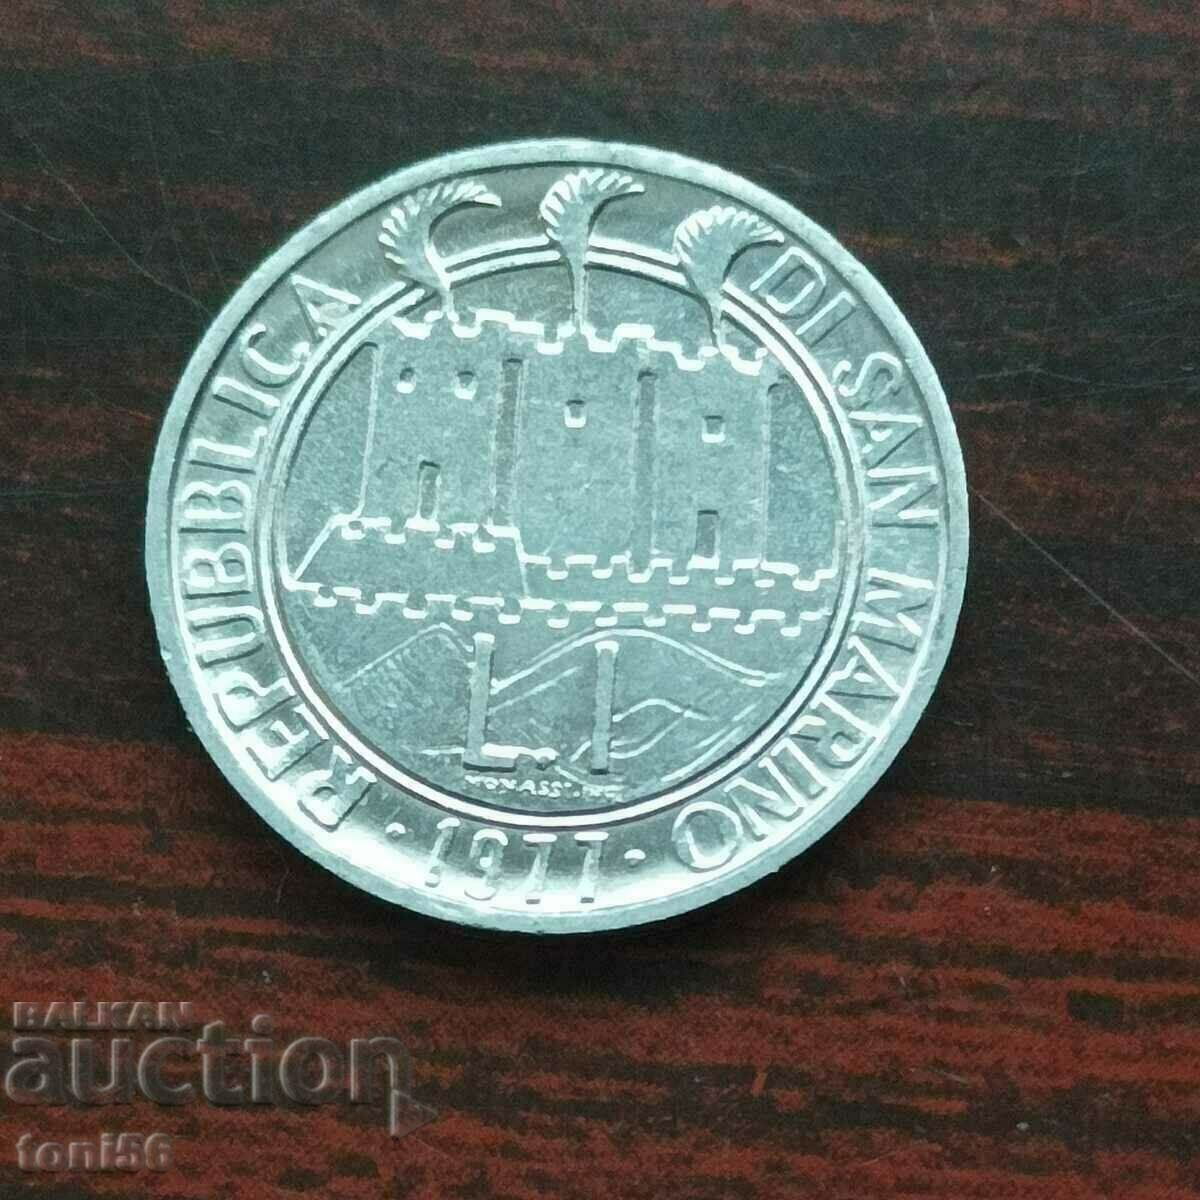 Estonia 20 cents 1997 UNC